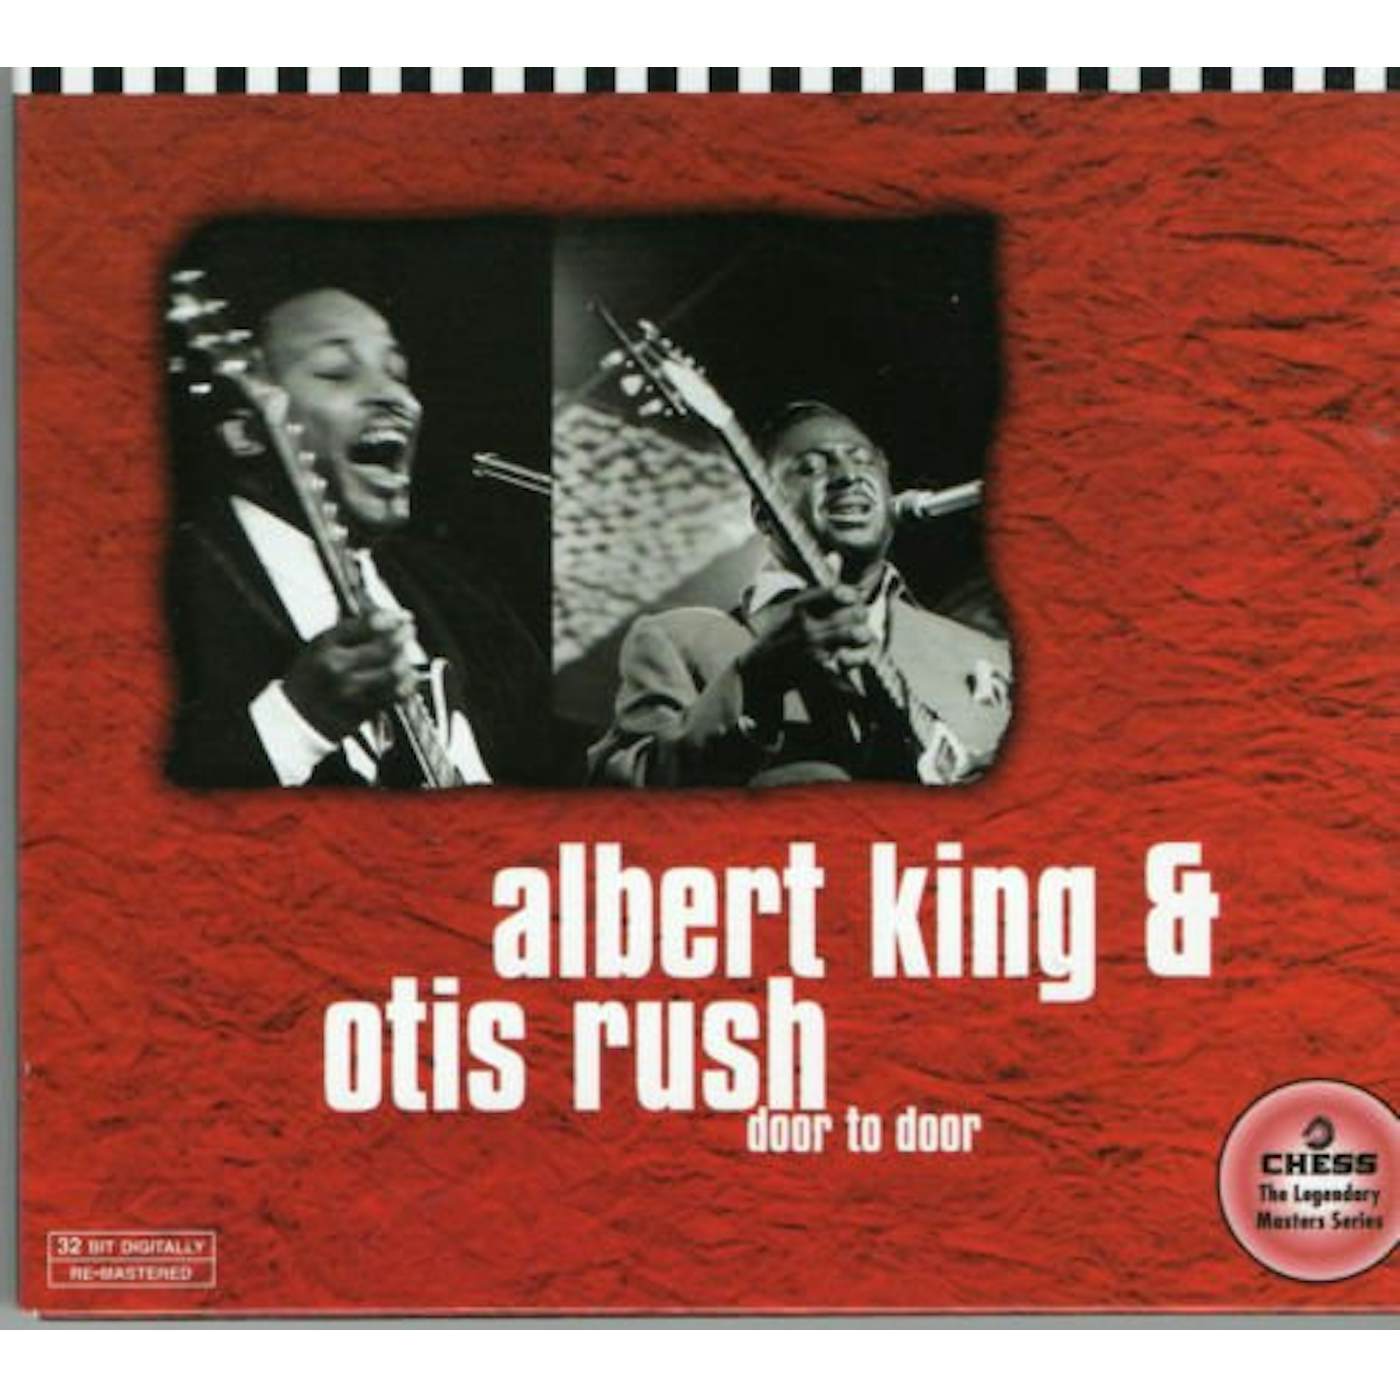 Albert King DOOR TO DOOR (LIMITED) & OTIS CD